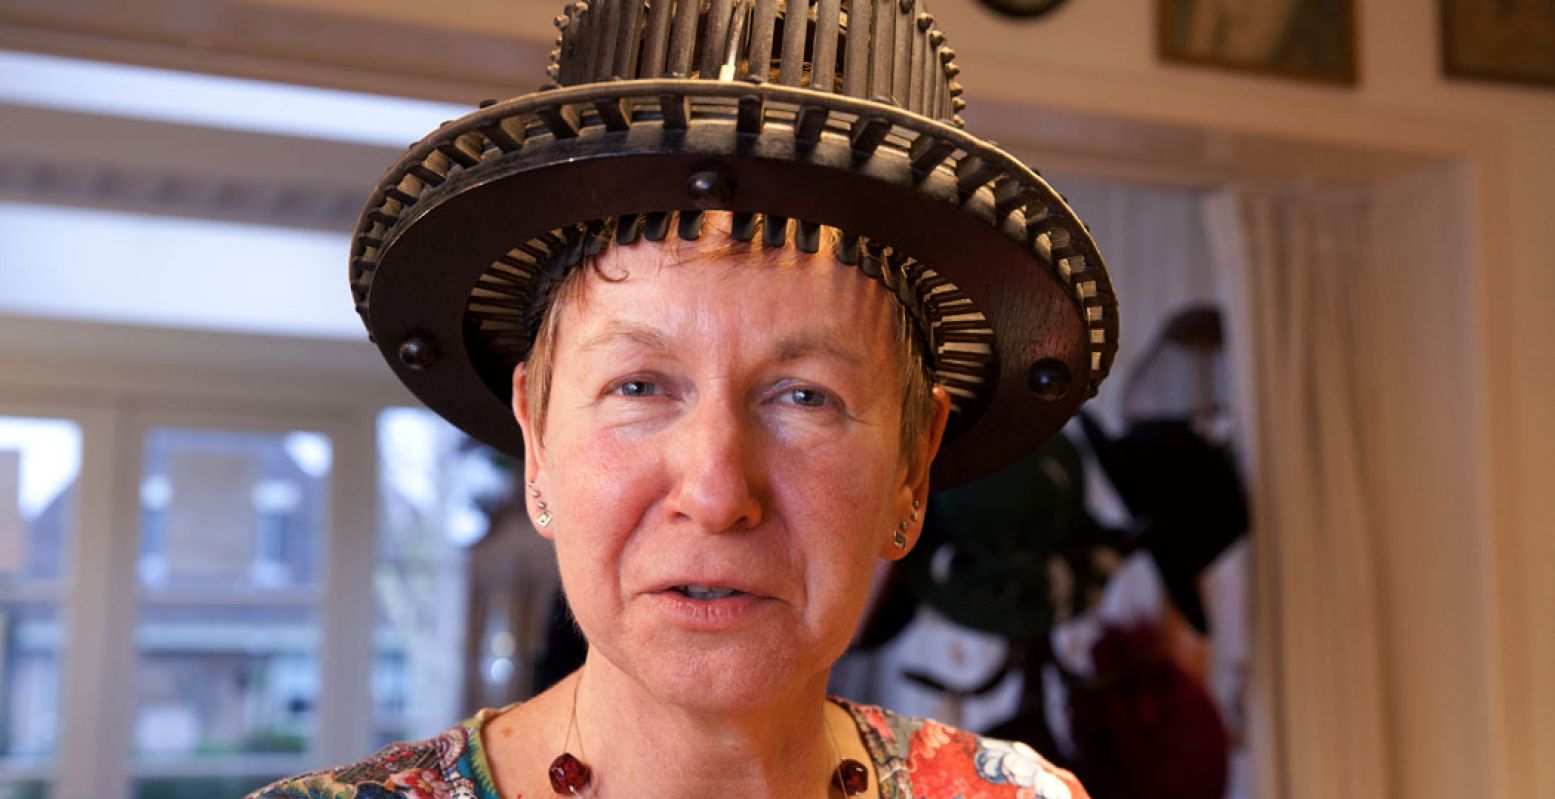 Eigenaresse Wil Gorter met een conformateur op haar hoofd: hiermee meet je de juiste maat/omvang van het hoofd voor het maken van een hoge hoed. Foto: Hoedenmuseum "Zet 'm op" © Patricia van Buuren